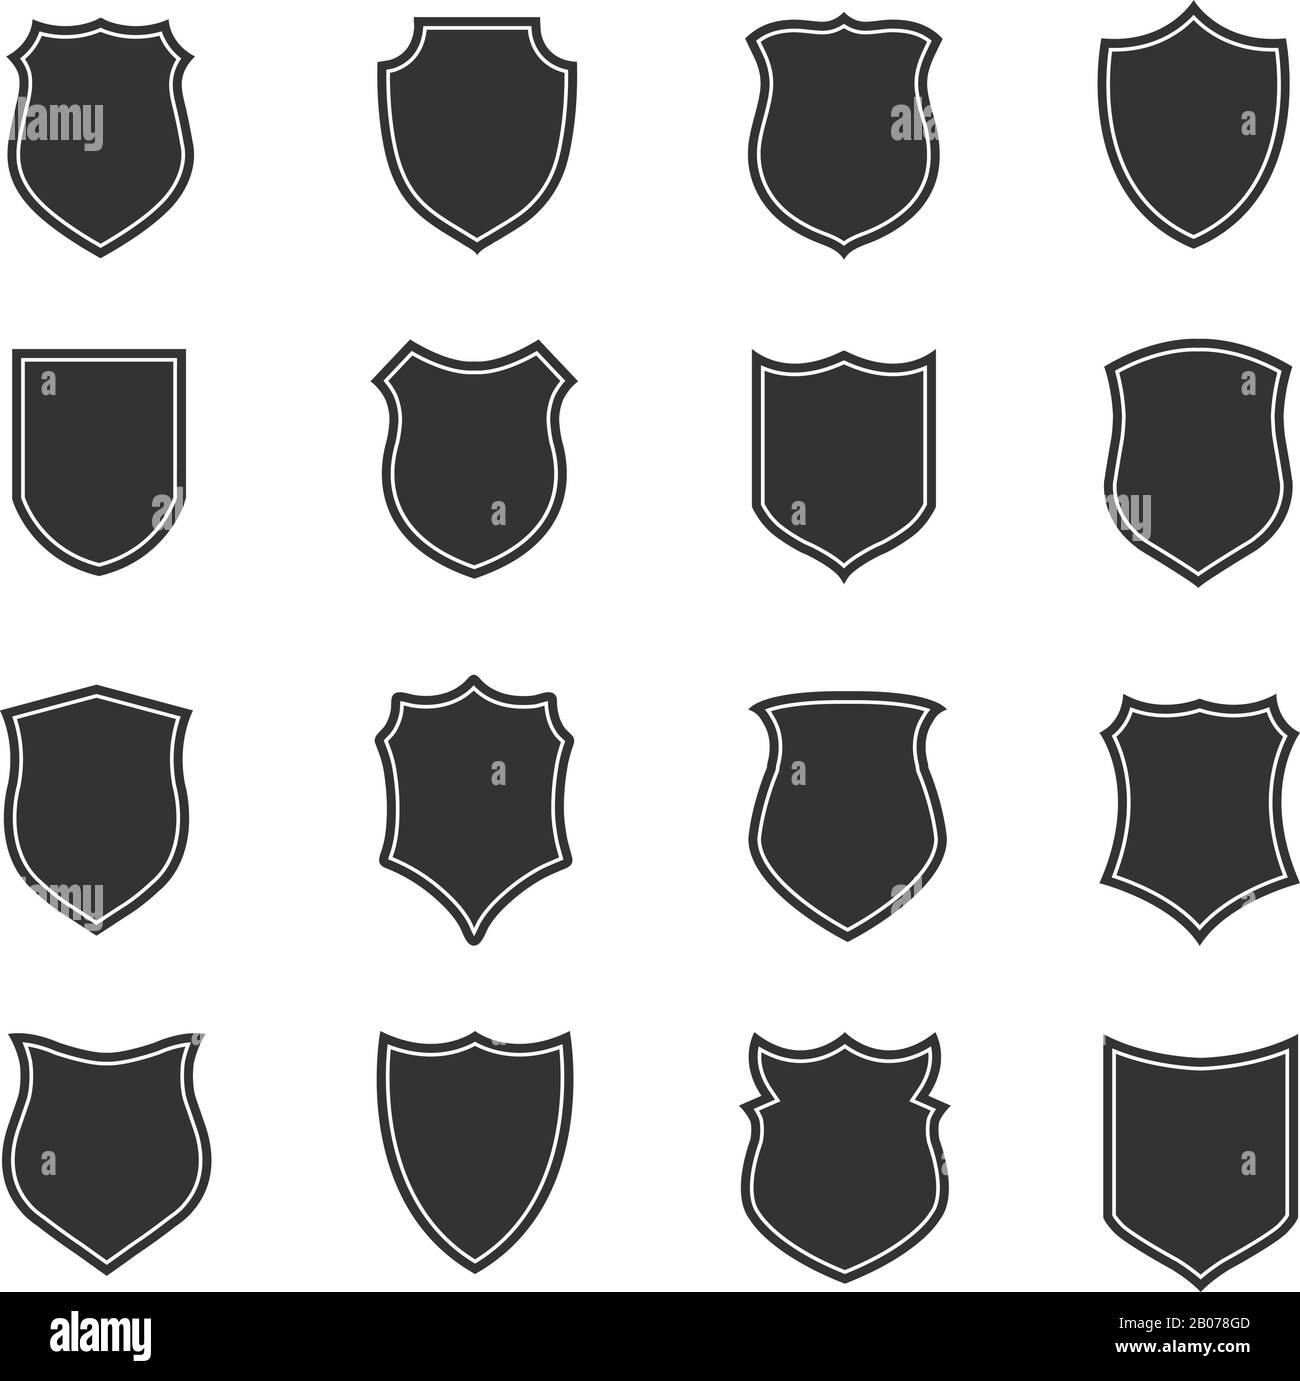 Schildervektor-Silhouetten für Etiketten und Embleme, Sicherheitskennzeichen. Abbildung der Schutzsymbole und mittelalterlichen Elemente Stock Vektor